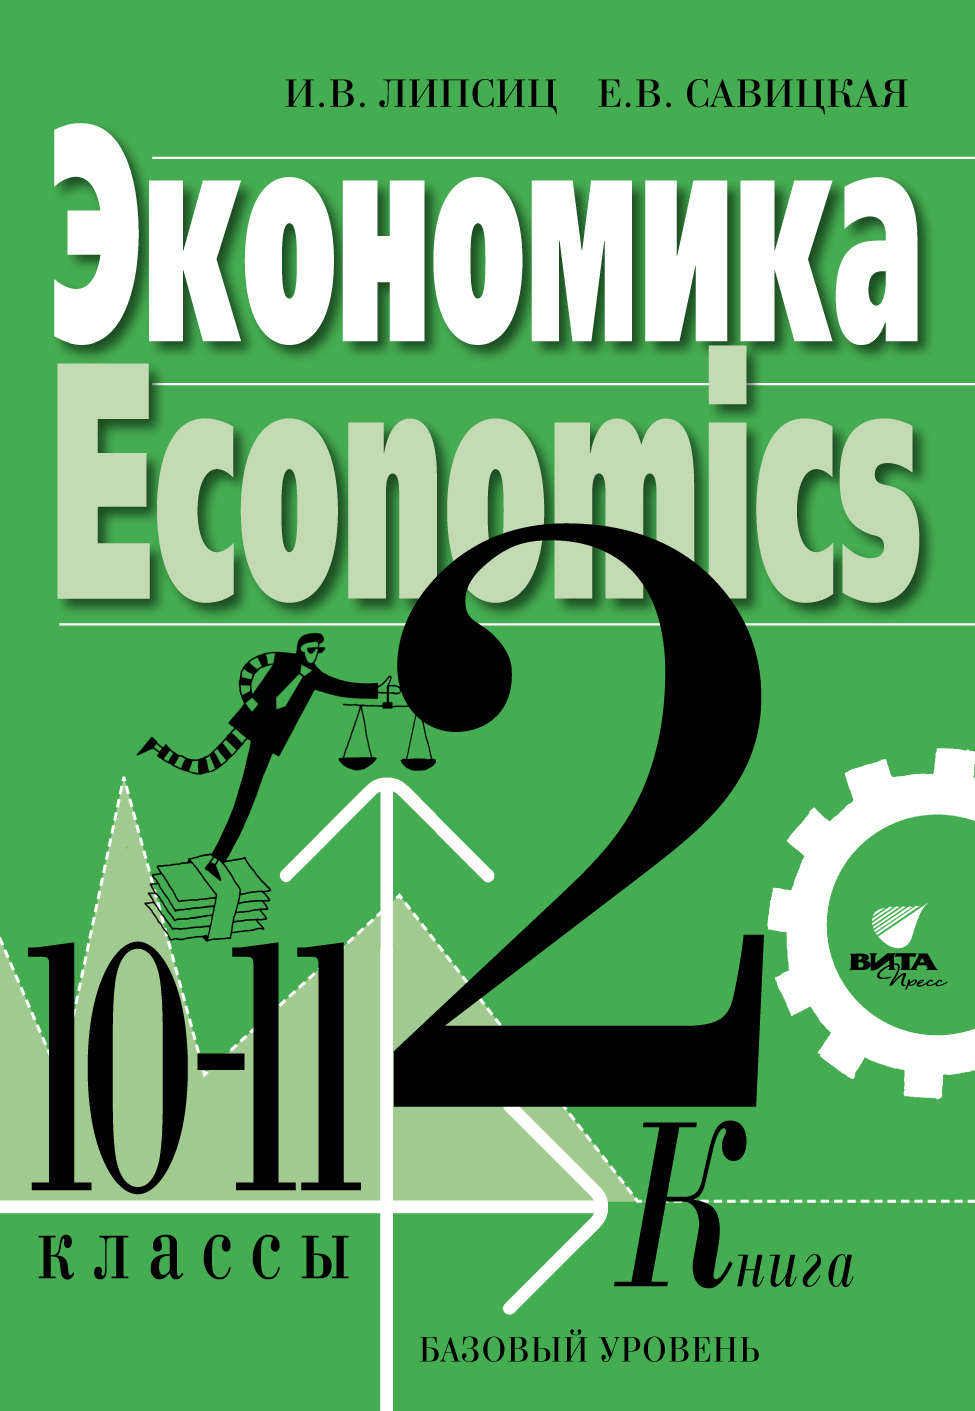 Книга: Учебный материал по мировой экономике